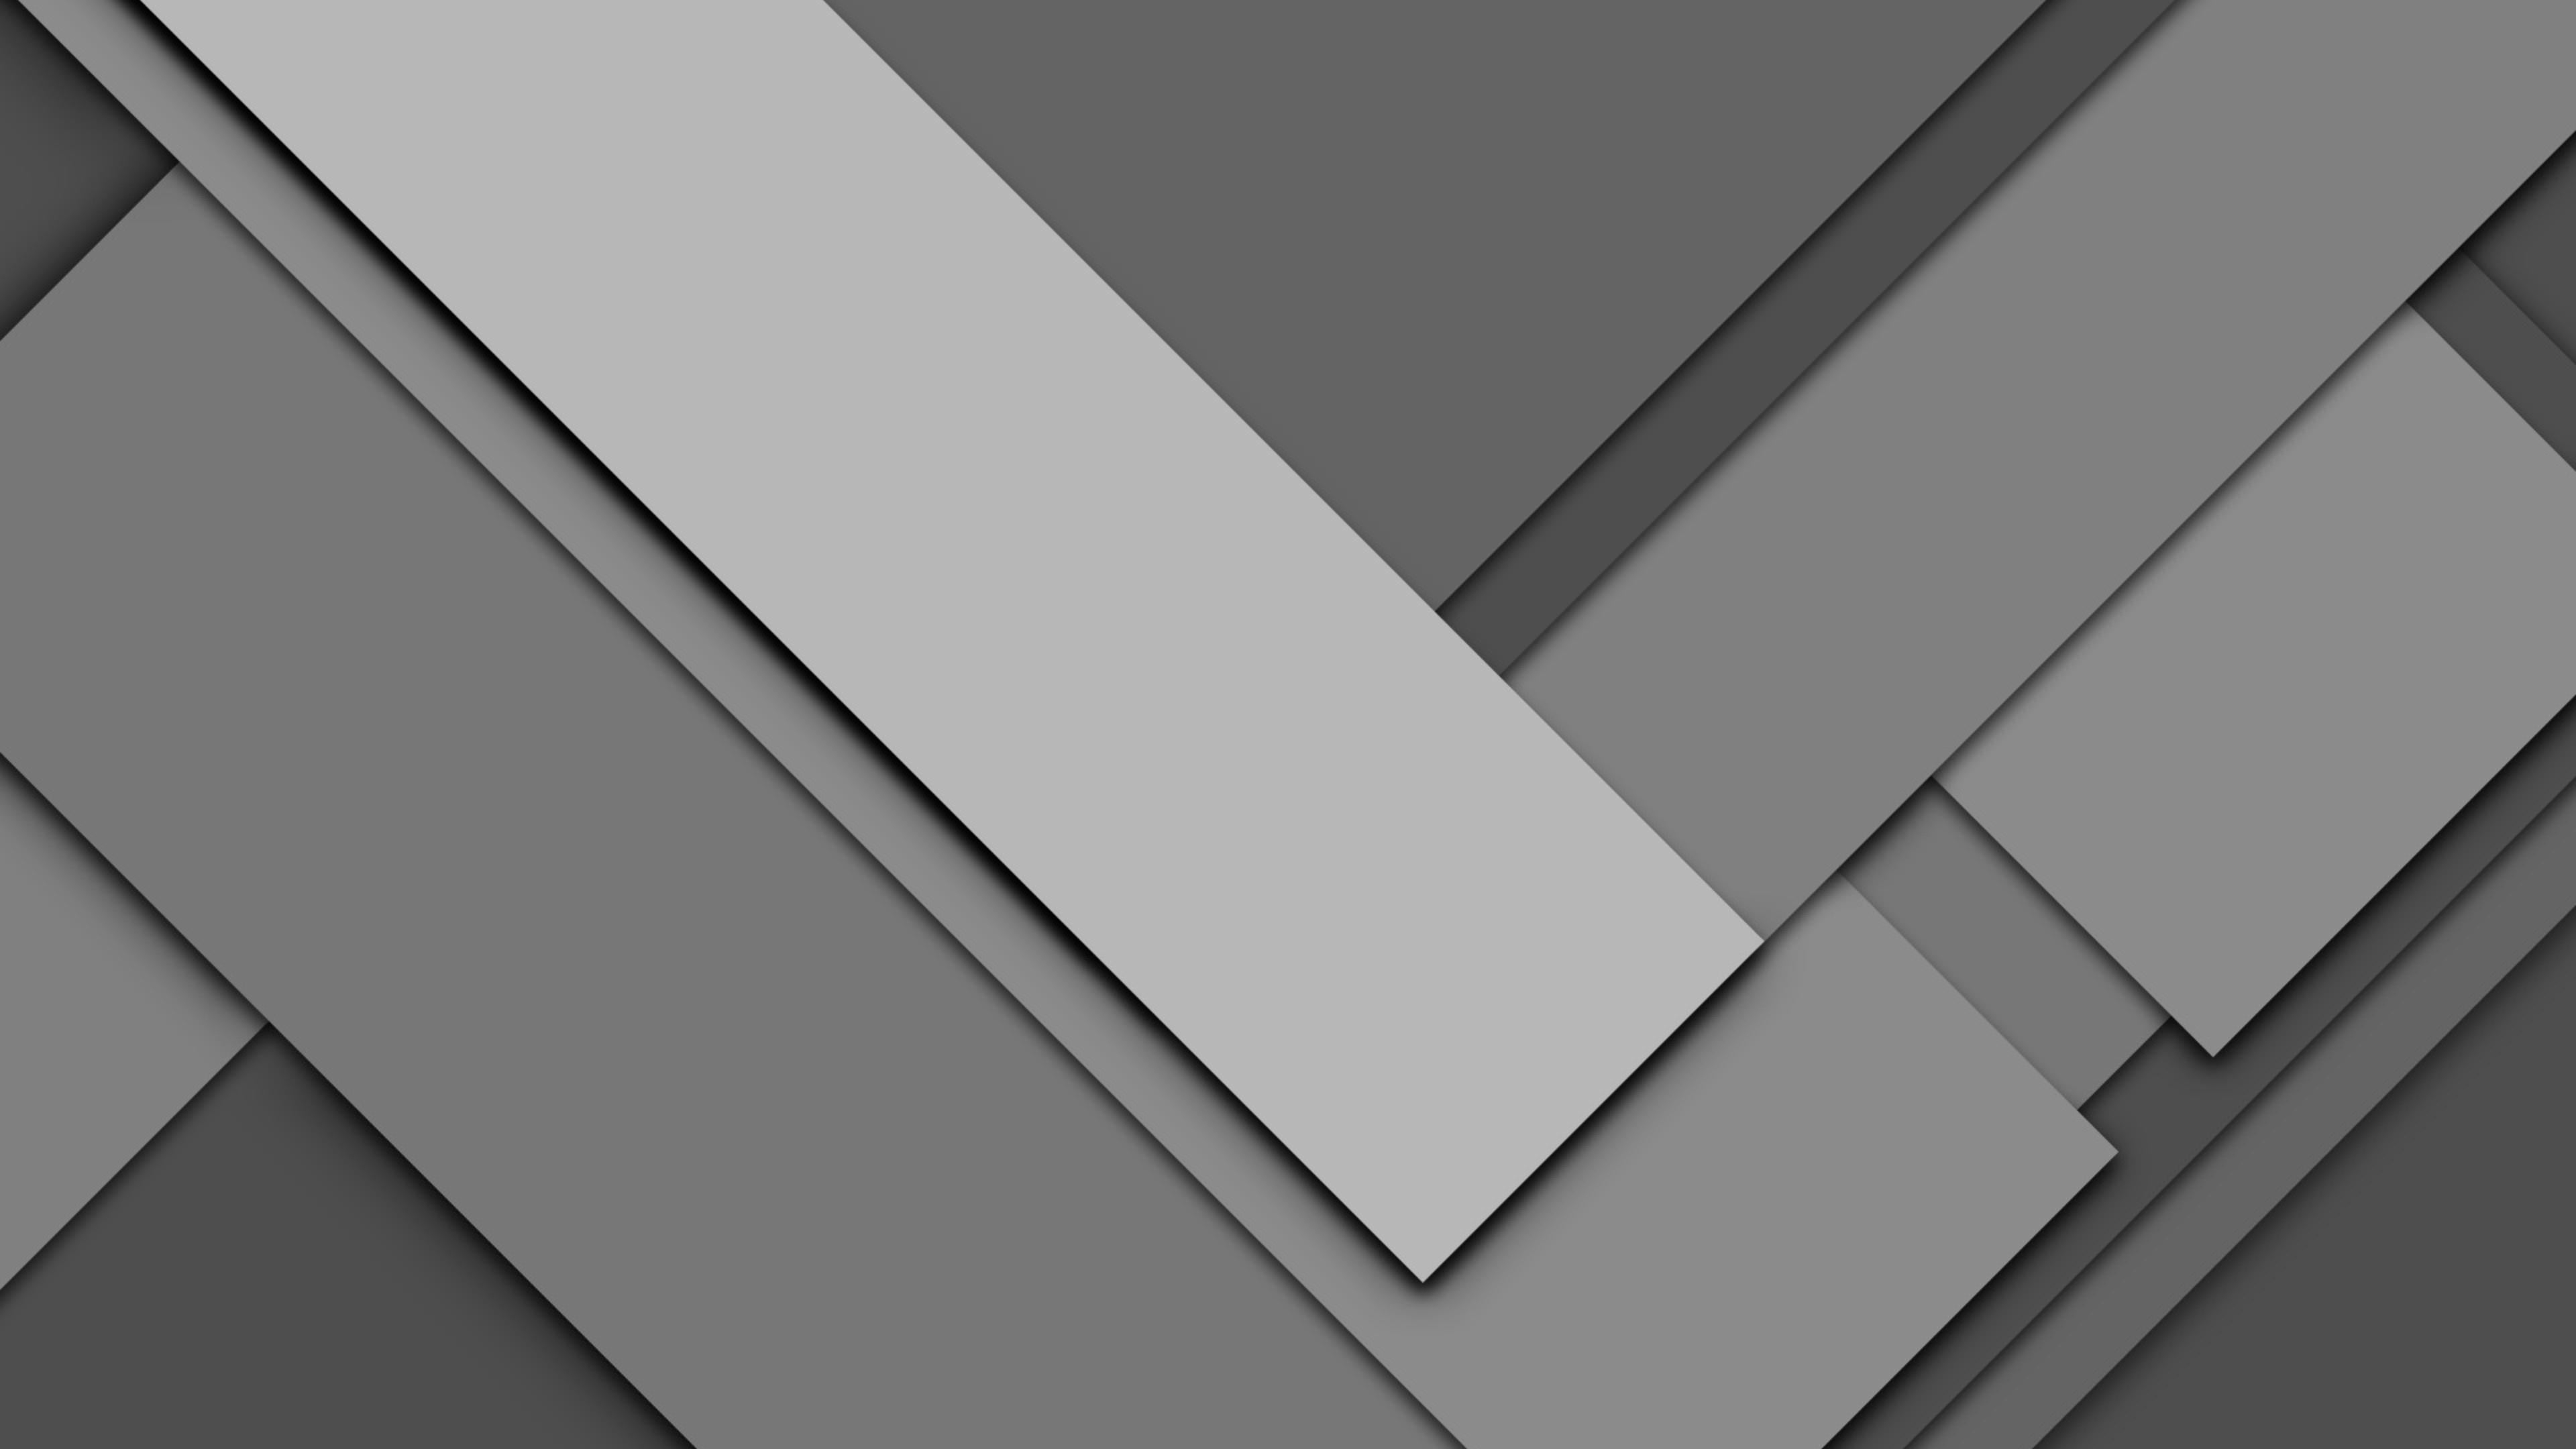 48+] Material Design Wallpapers for Desktop - WallpaperSafari